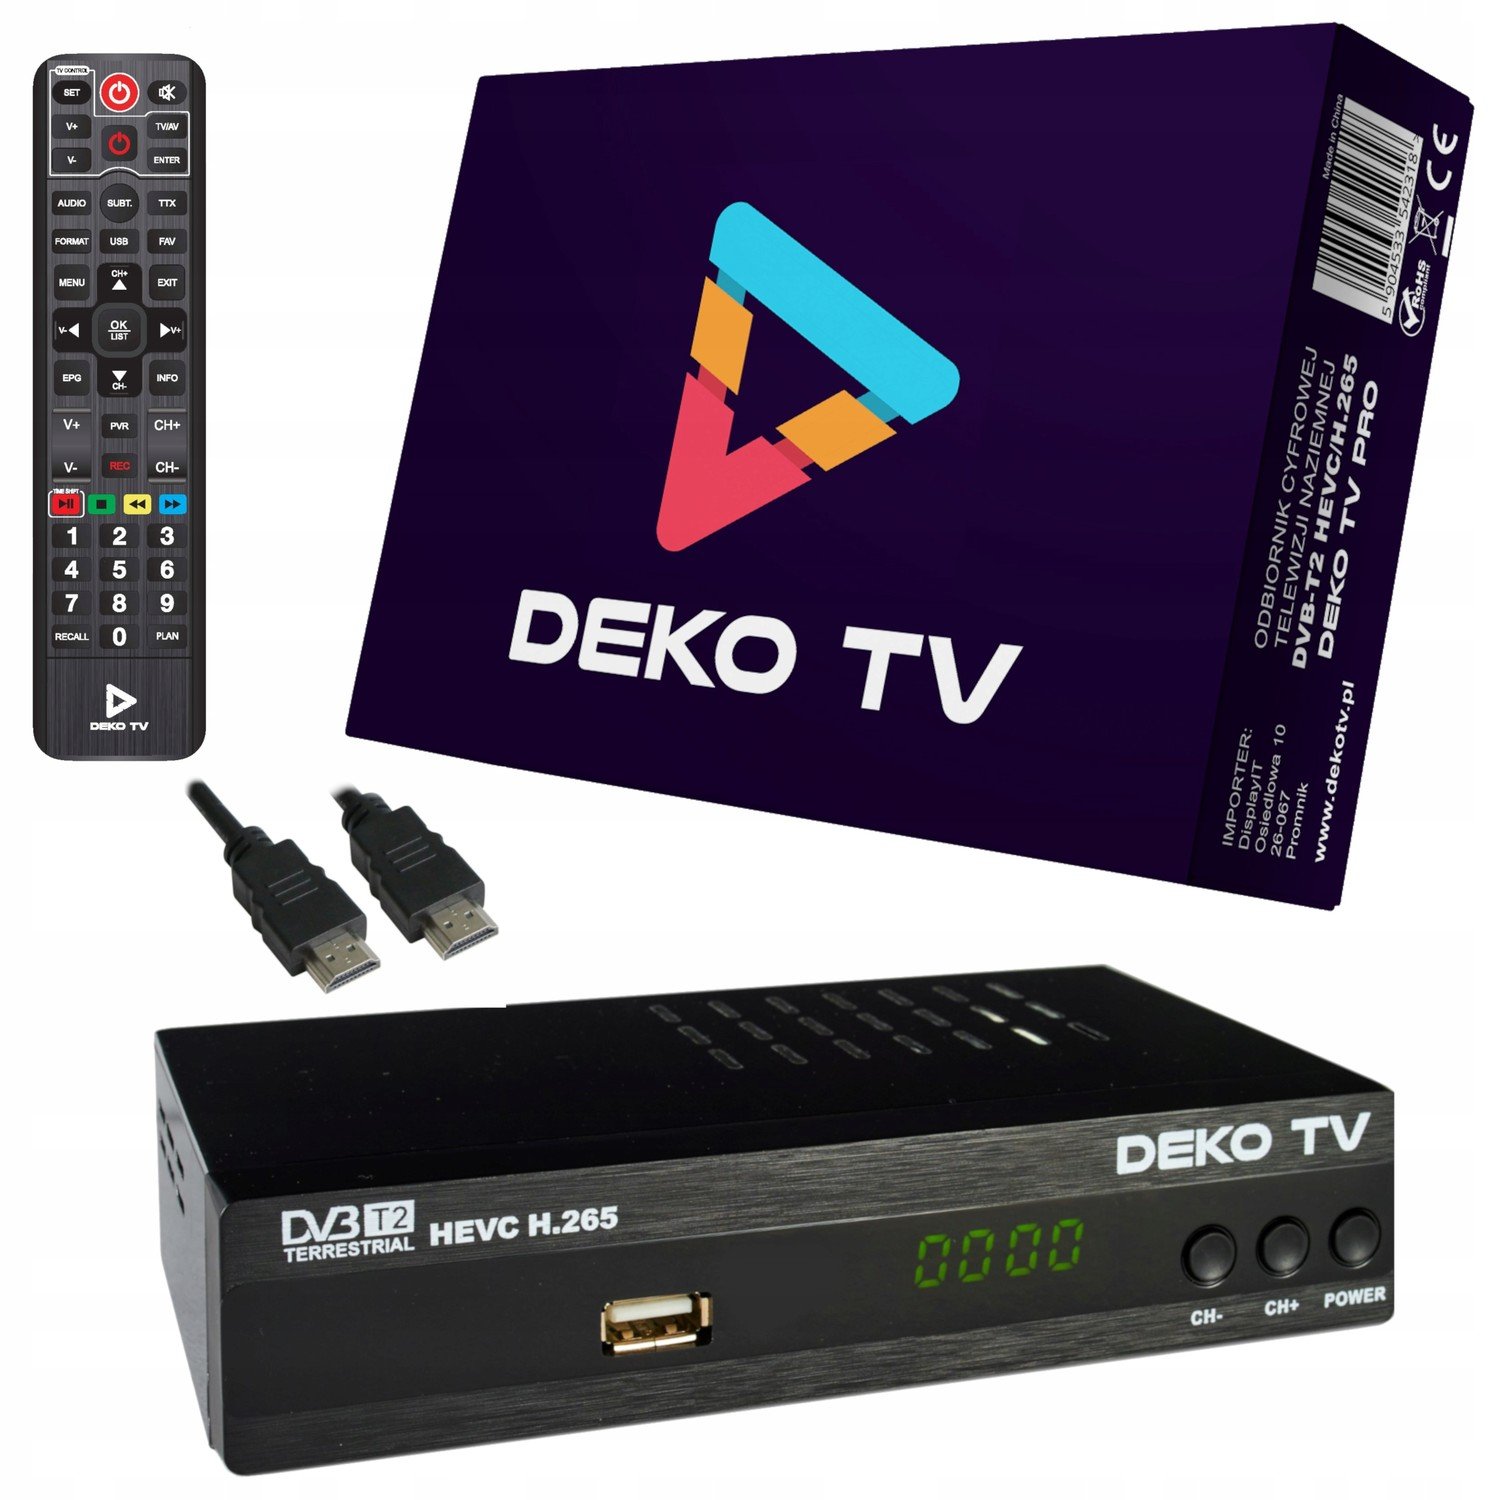 DVB-T2 dekodér DekoTV Pro Hevc H.265 DVBT2